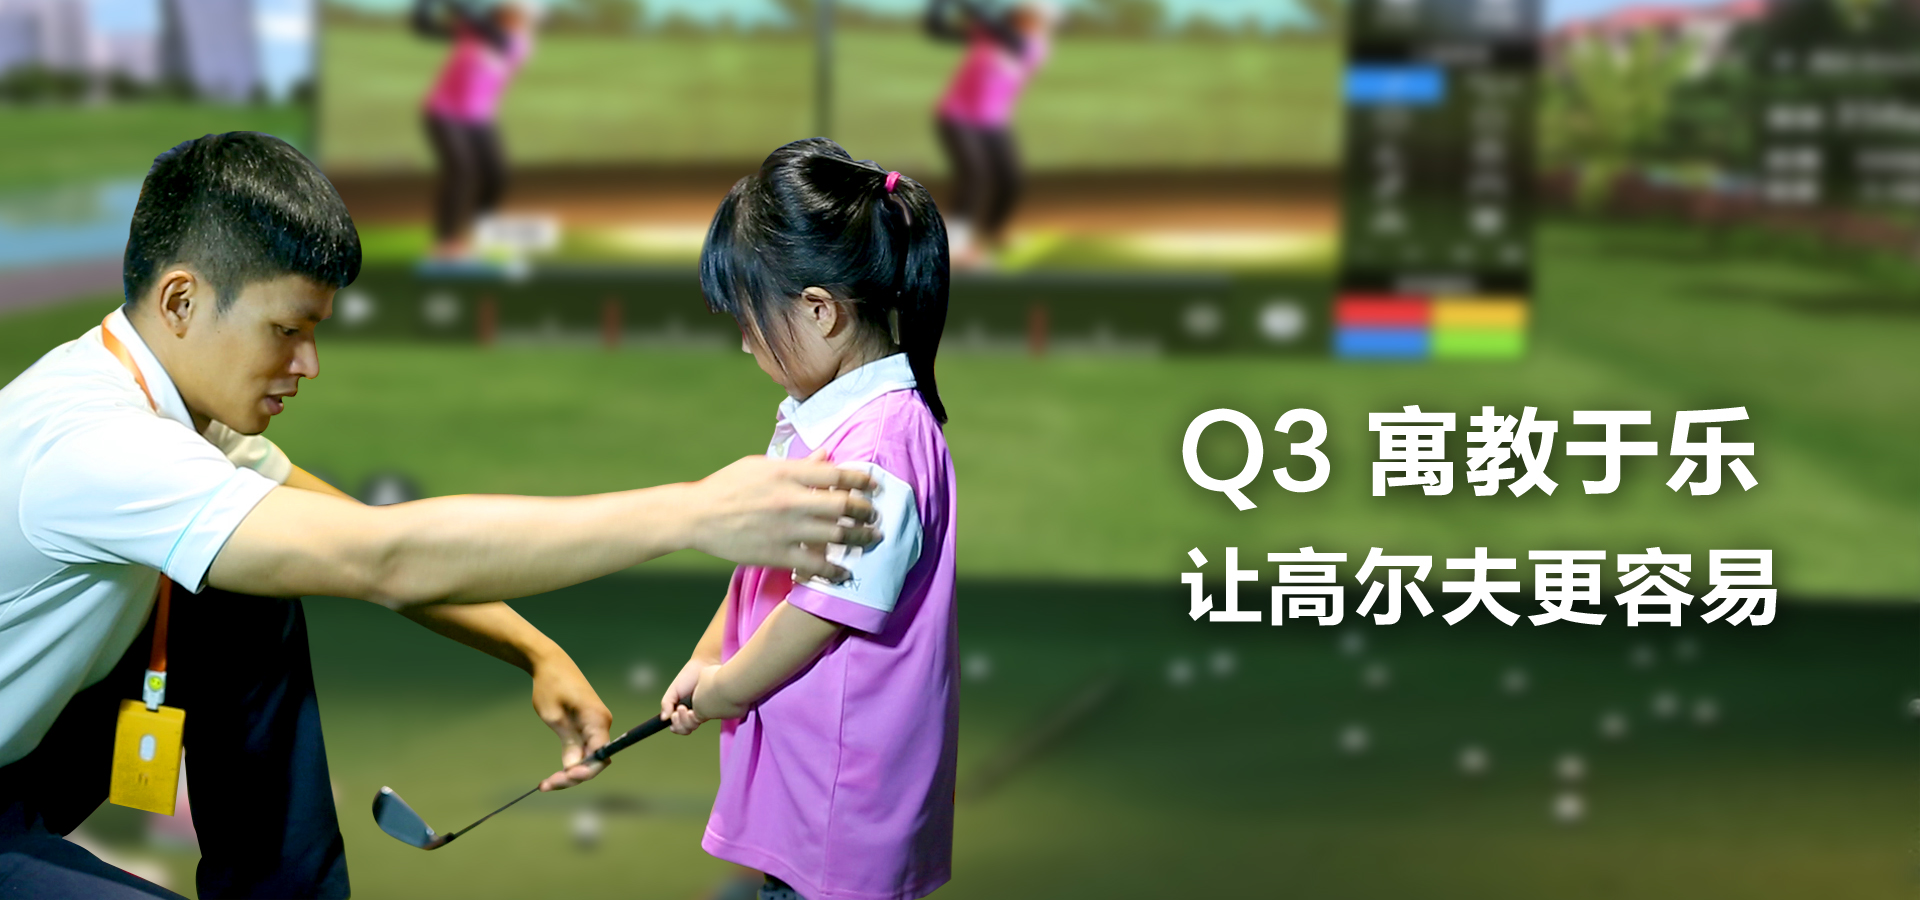 Q3寓教于乐，让高尔夫更容易.jpg